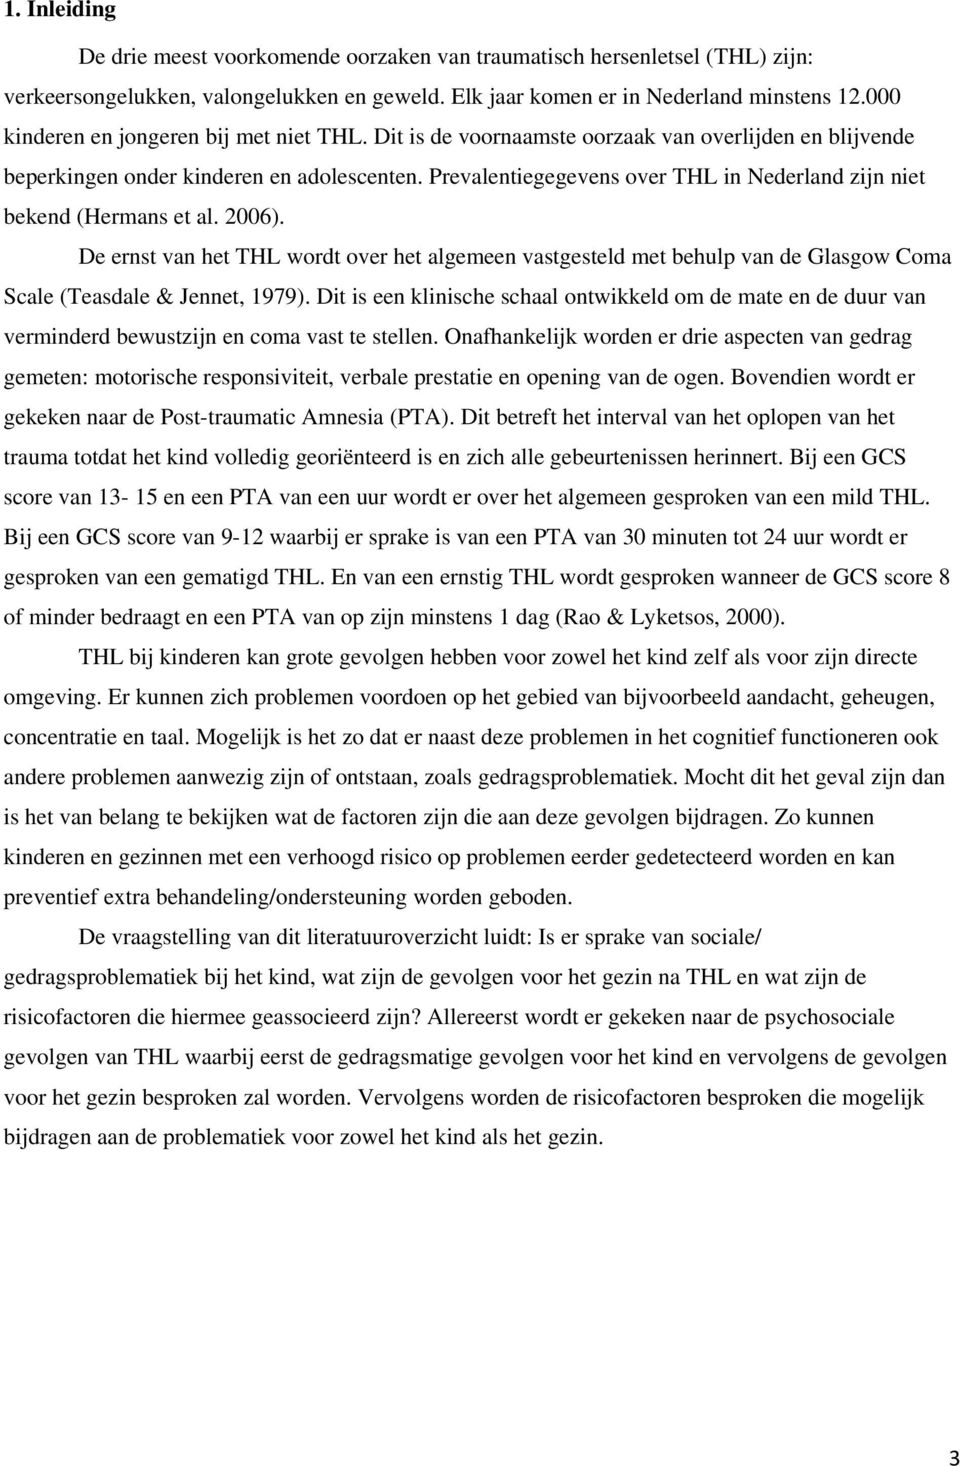 Prevalentiegegevens over THL in Nederland zijn niet bekend (Hermans et al. 2006).